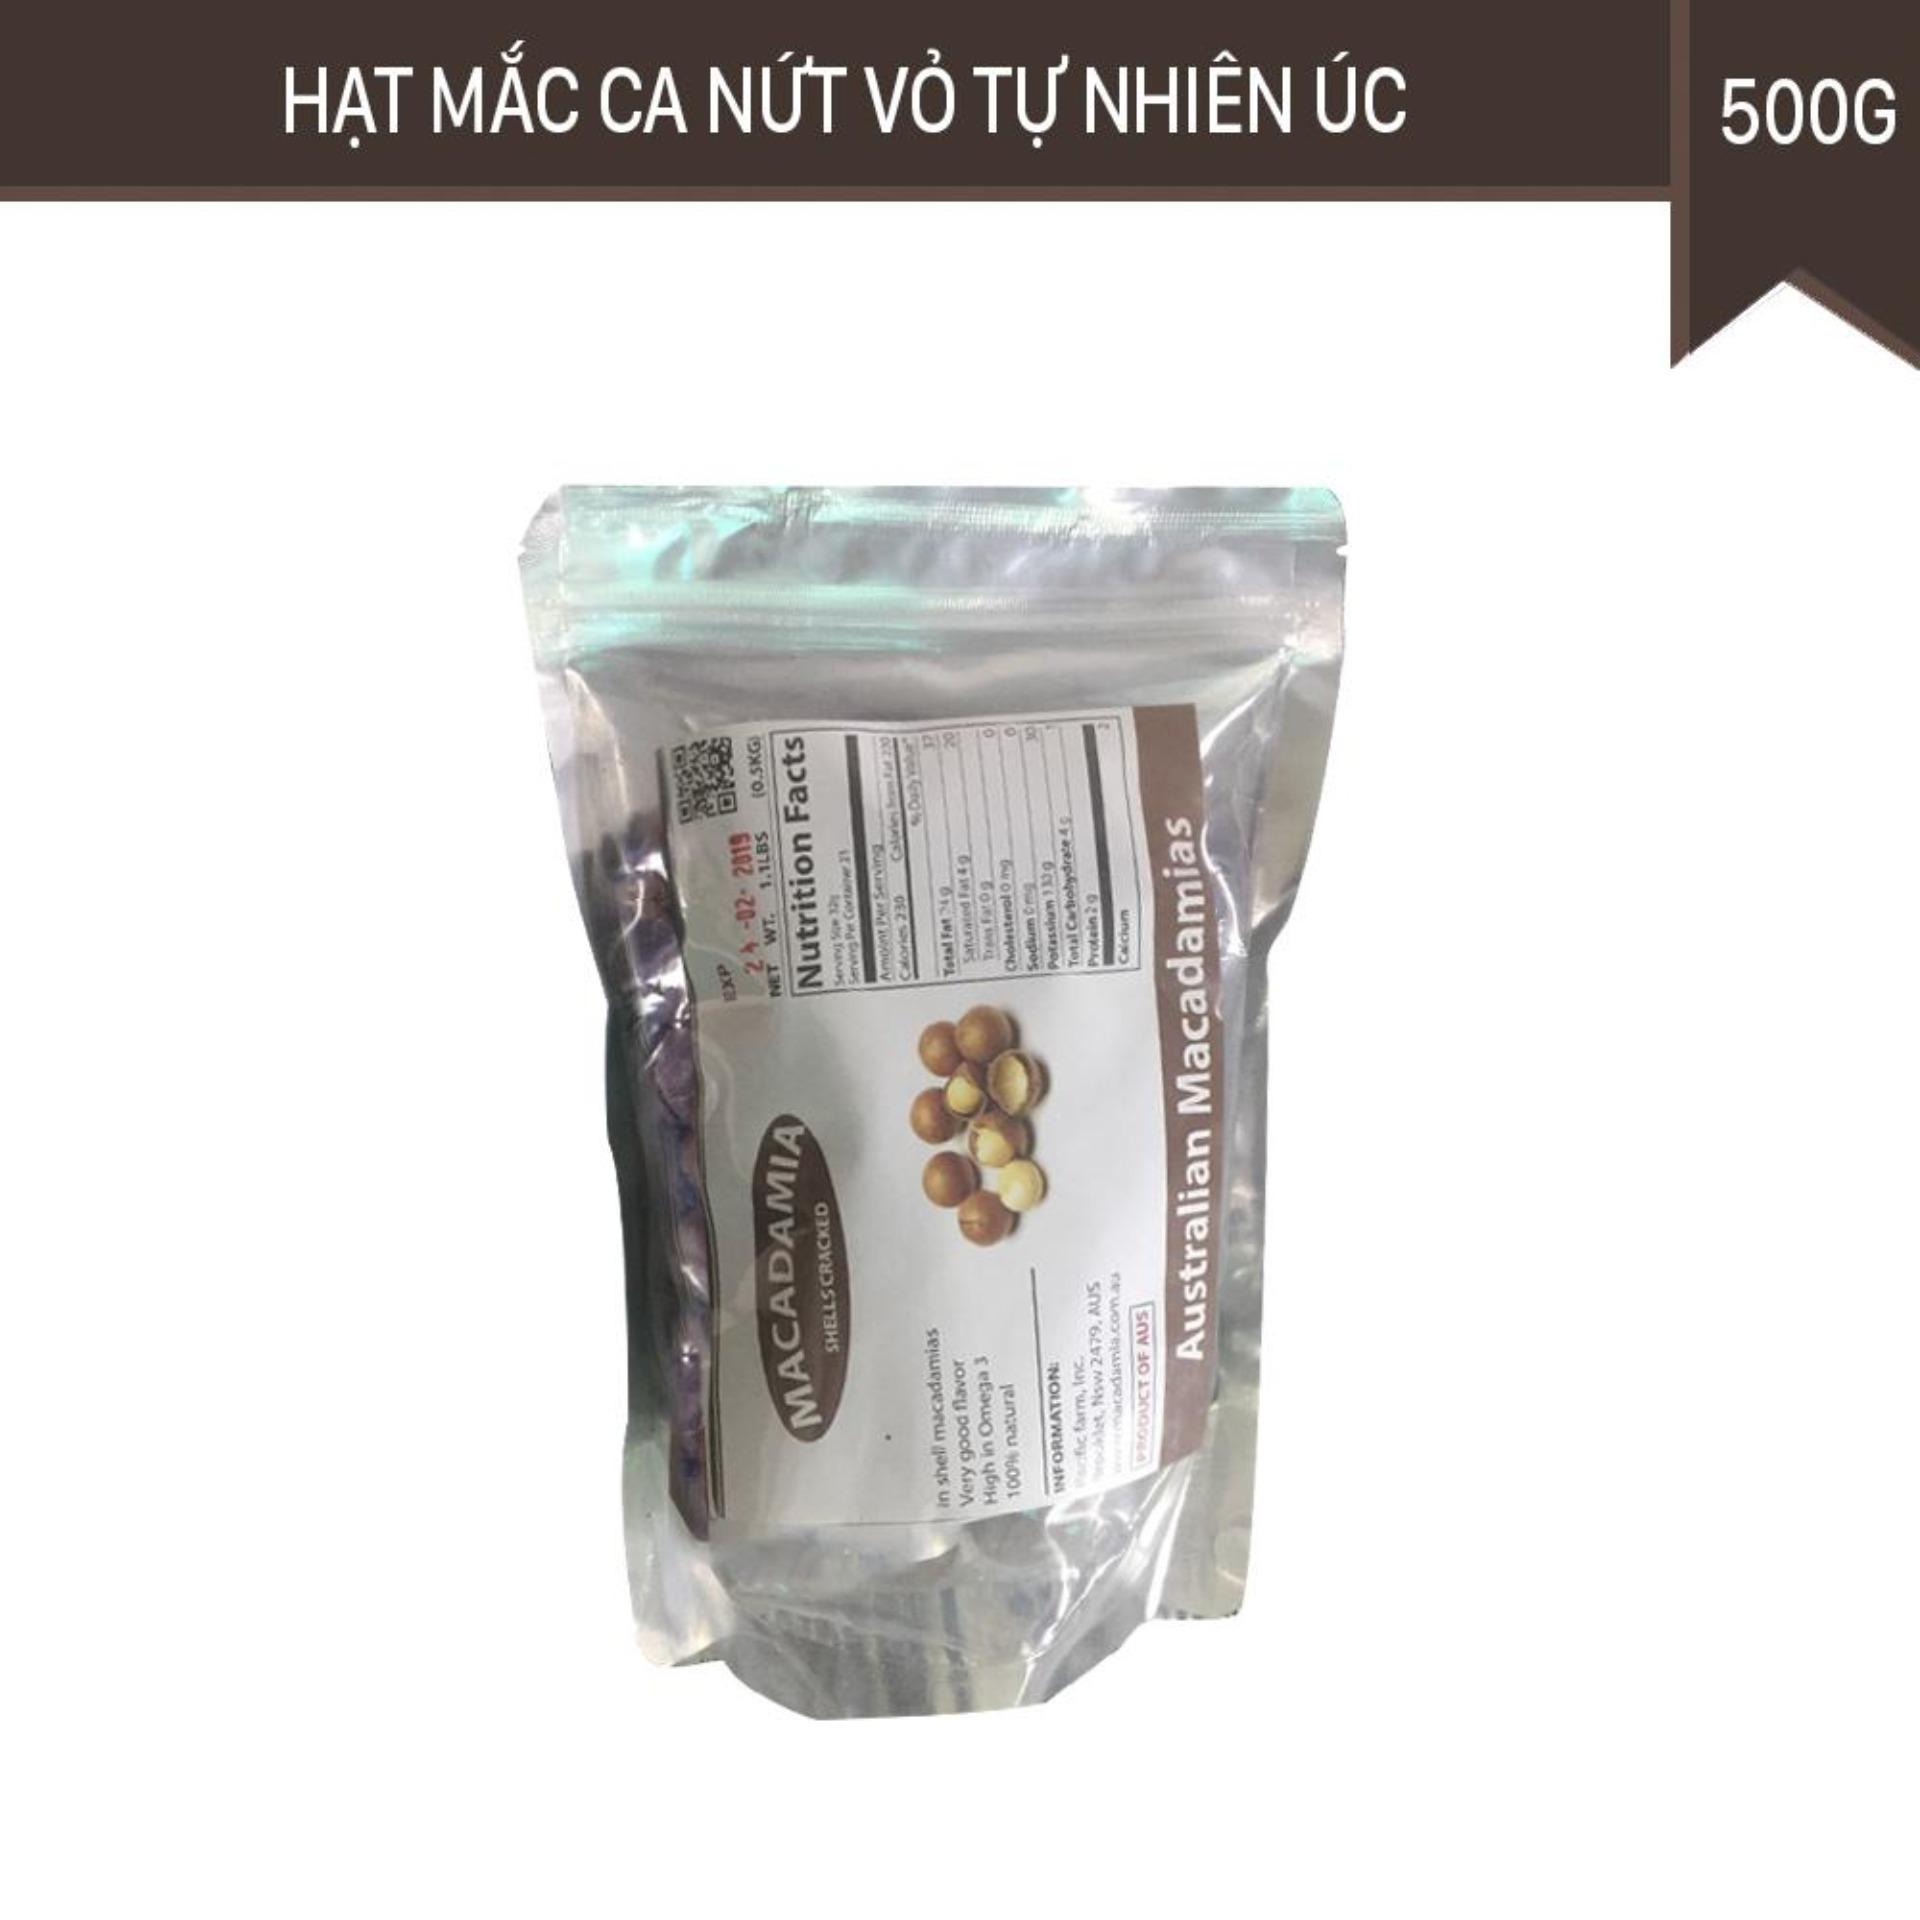 HCMBộ 2 gói Hạt mắc ca Macadamia nứt vỏ Úc 500G